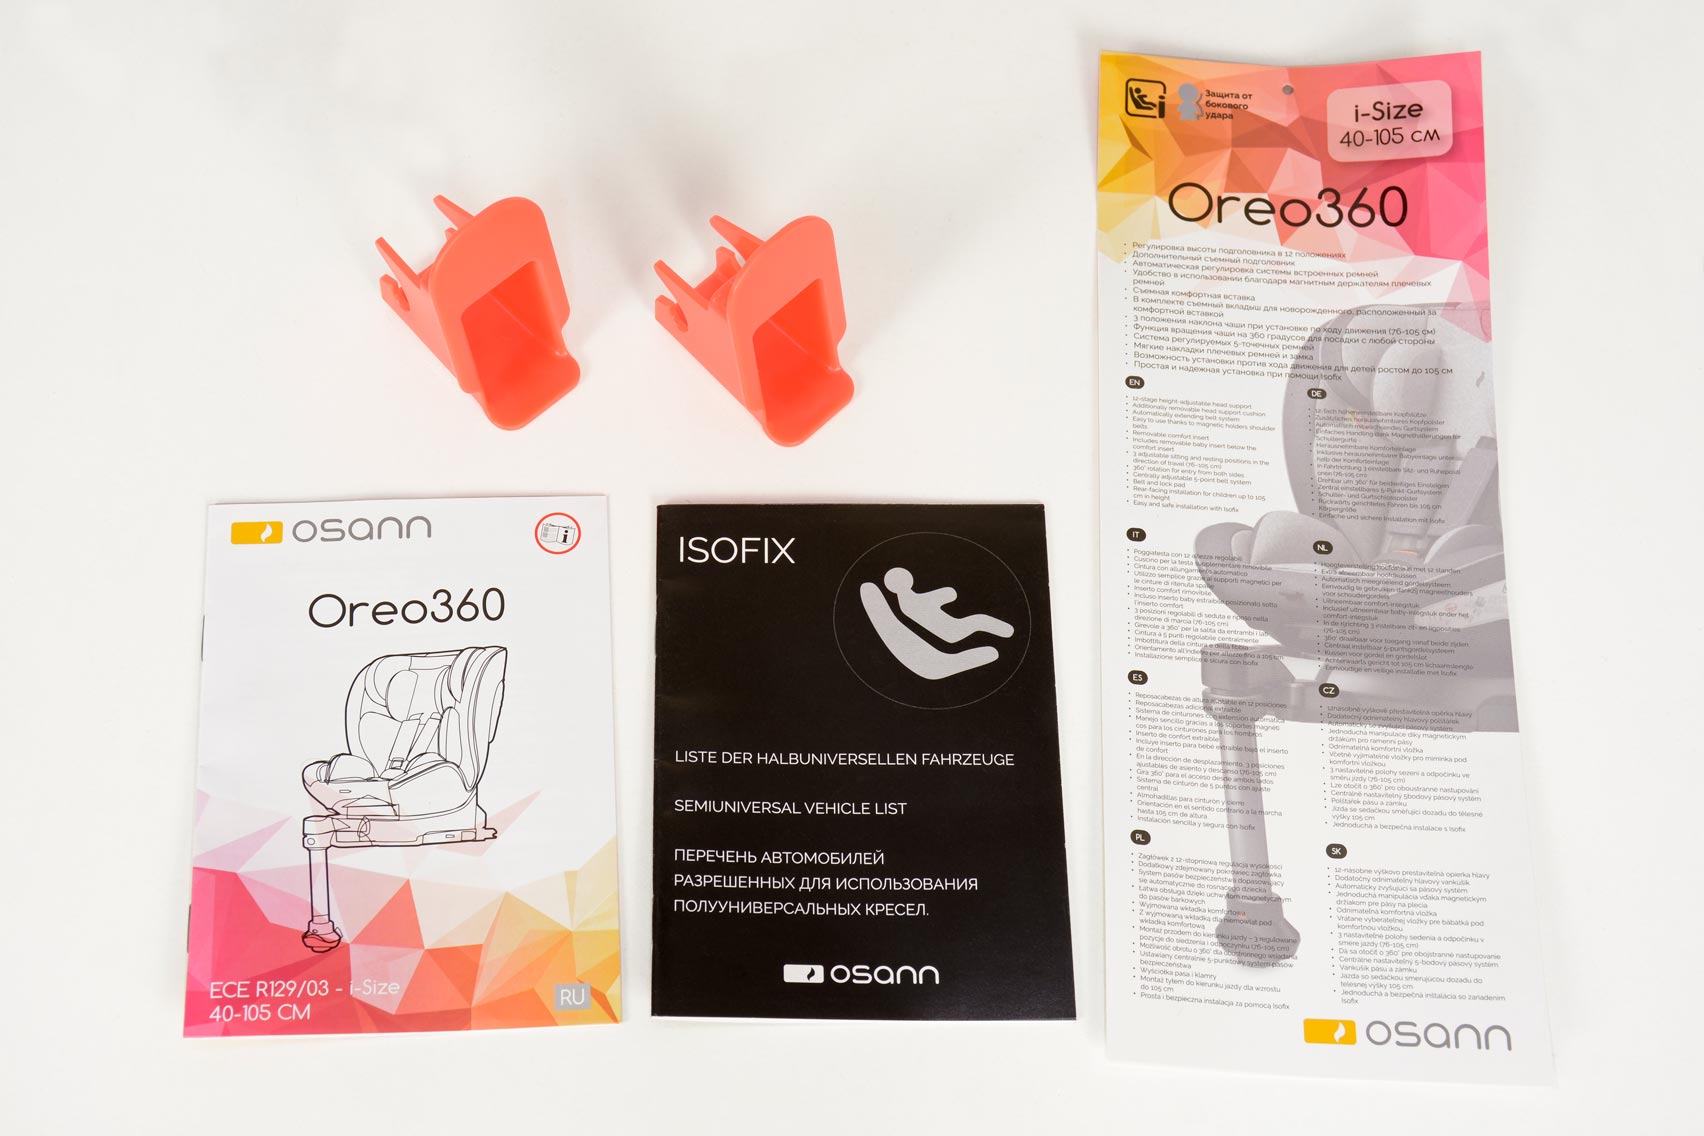 Osann Oreo 360 i-Size инструкции